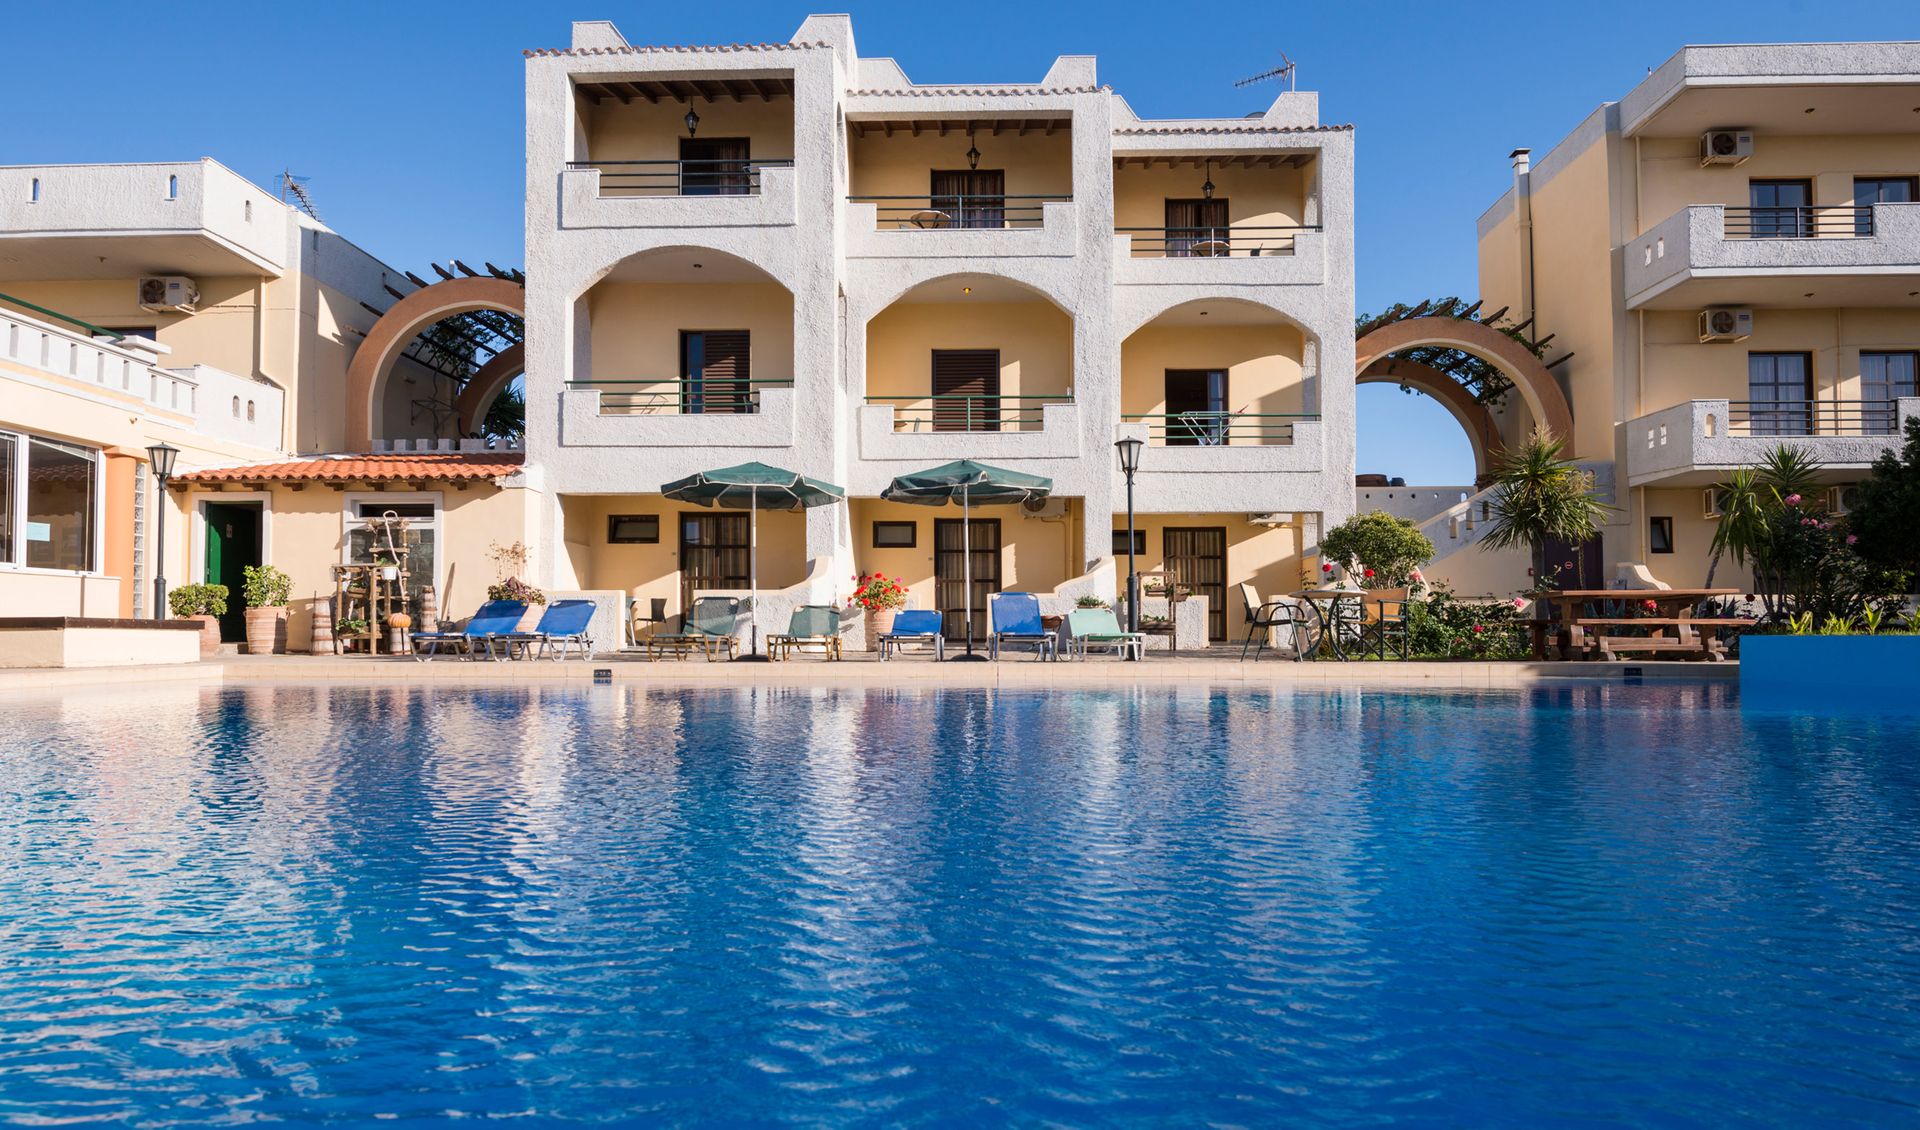 Nireas Hotel - Χανιά, Κρήτη ✦ 2 Ημέρες (1 Διανυκτέρευση) ✦ 2 άτομα + 1 παιδί έως 11 ετών ✦ 1 ✦ έως 30/09/2023 ✦ Κοντά στην Παραλία!